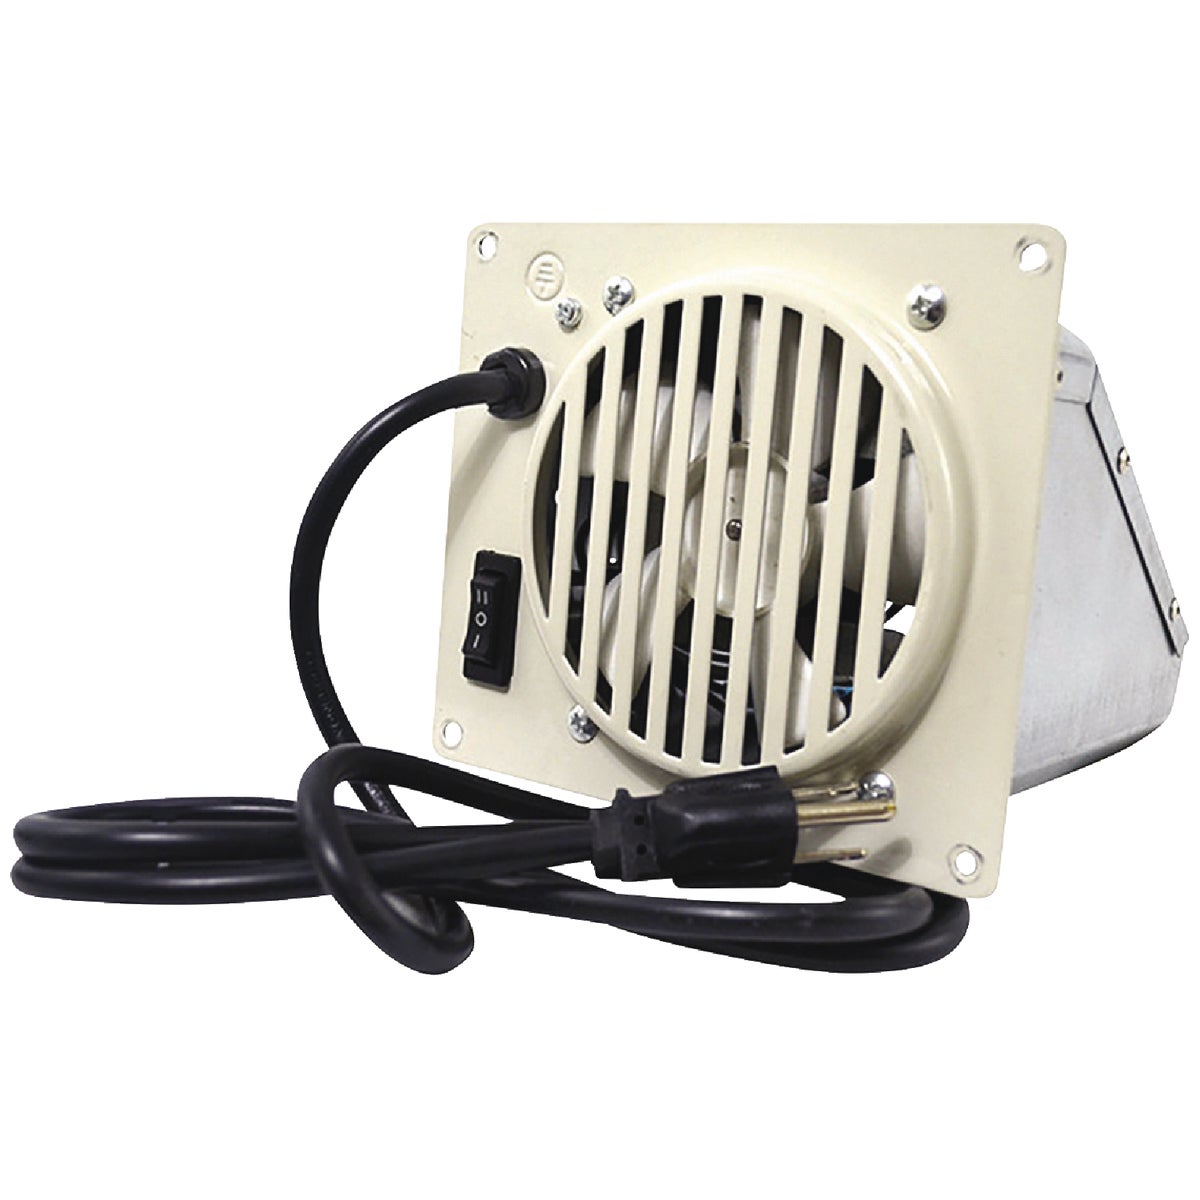 Mr. Heater Vent Free Wall Heater Blower Fan Kit